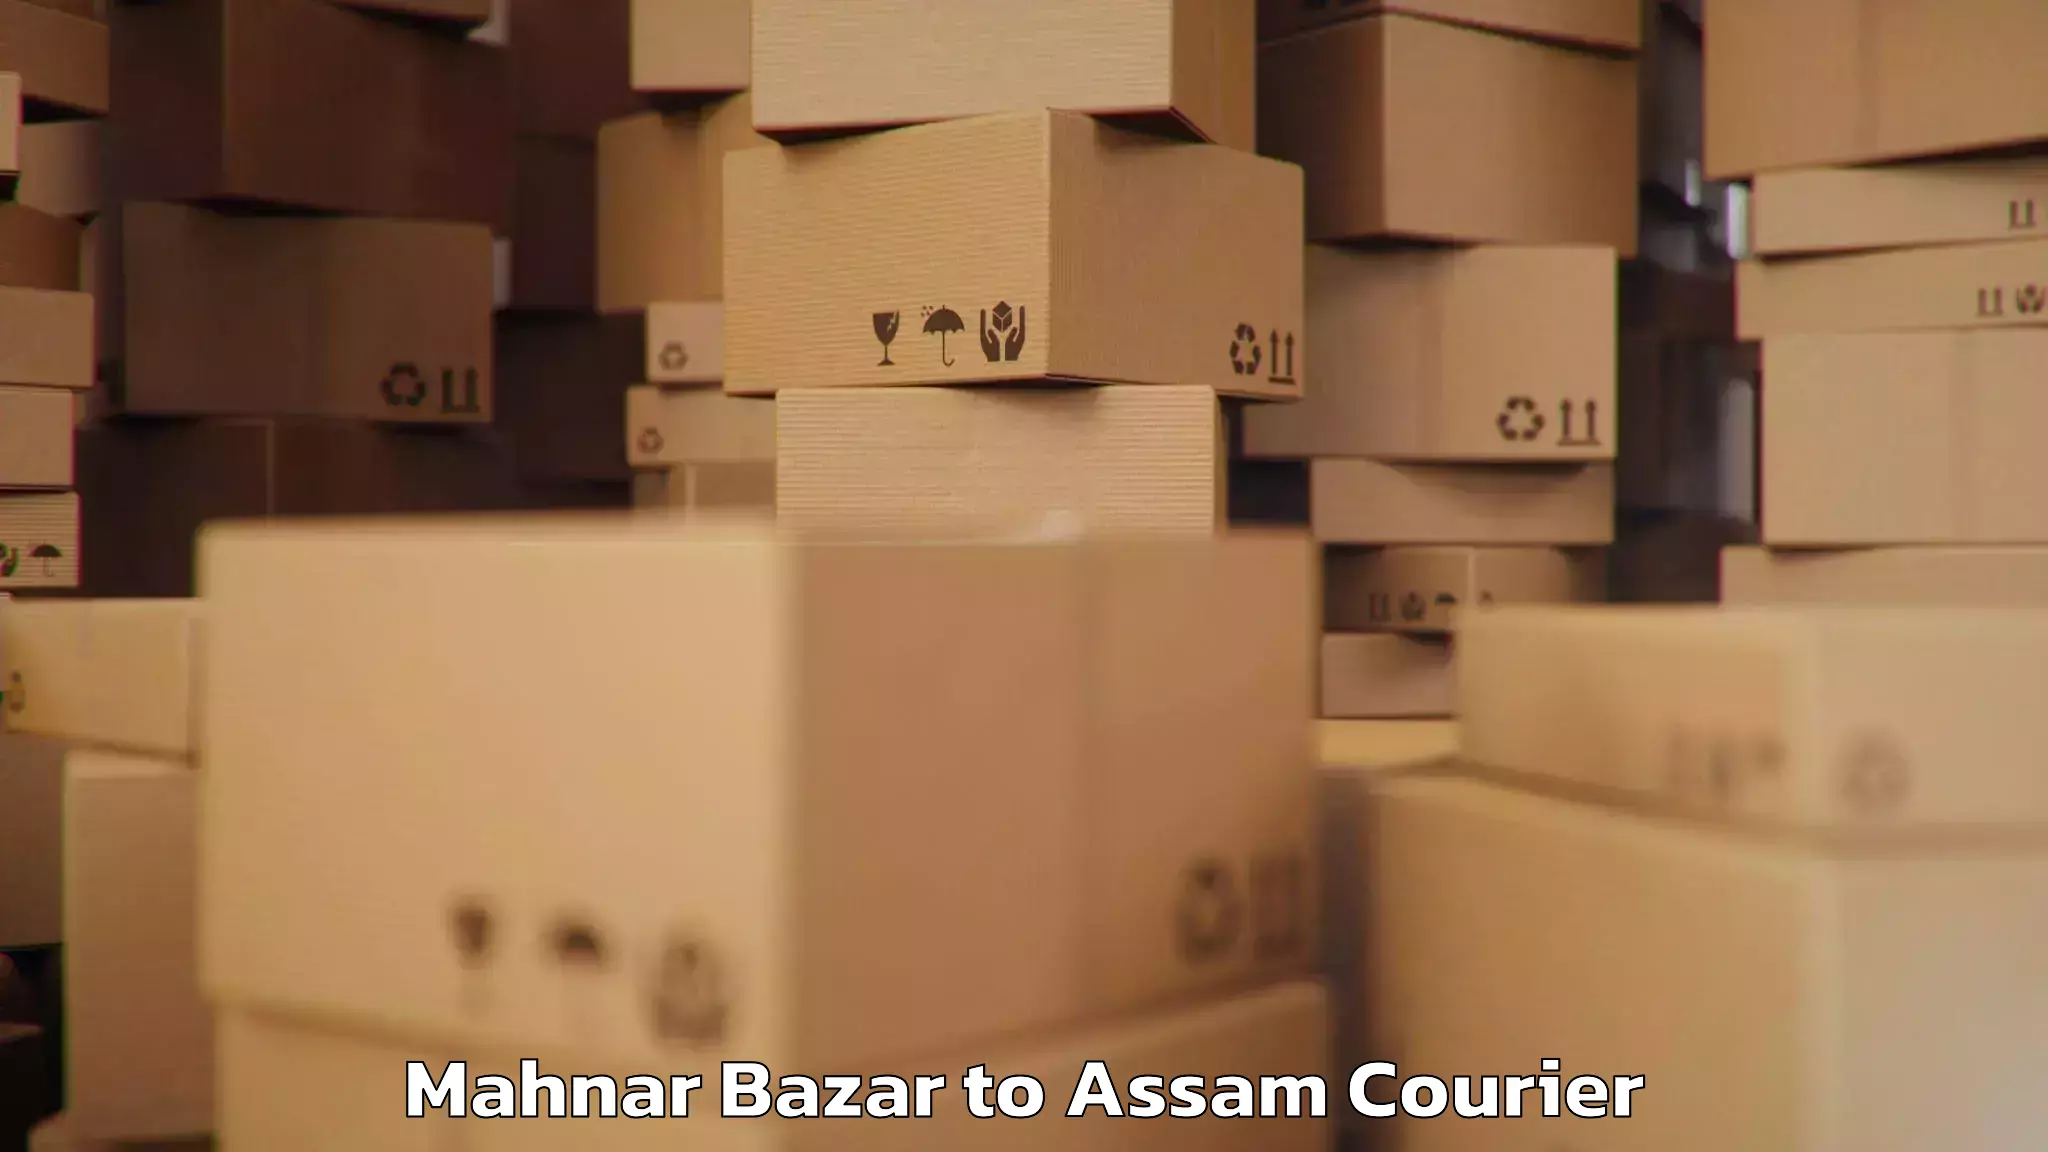 Baggage shipping experience Mahnar Bazar to Udalguri